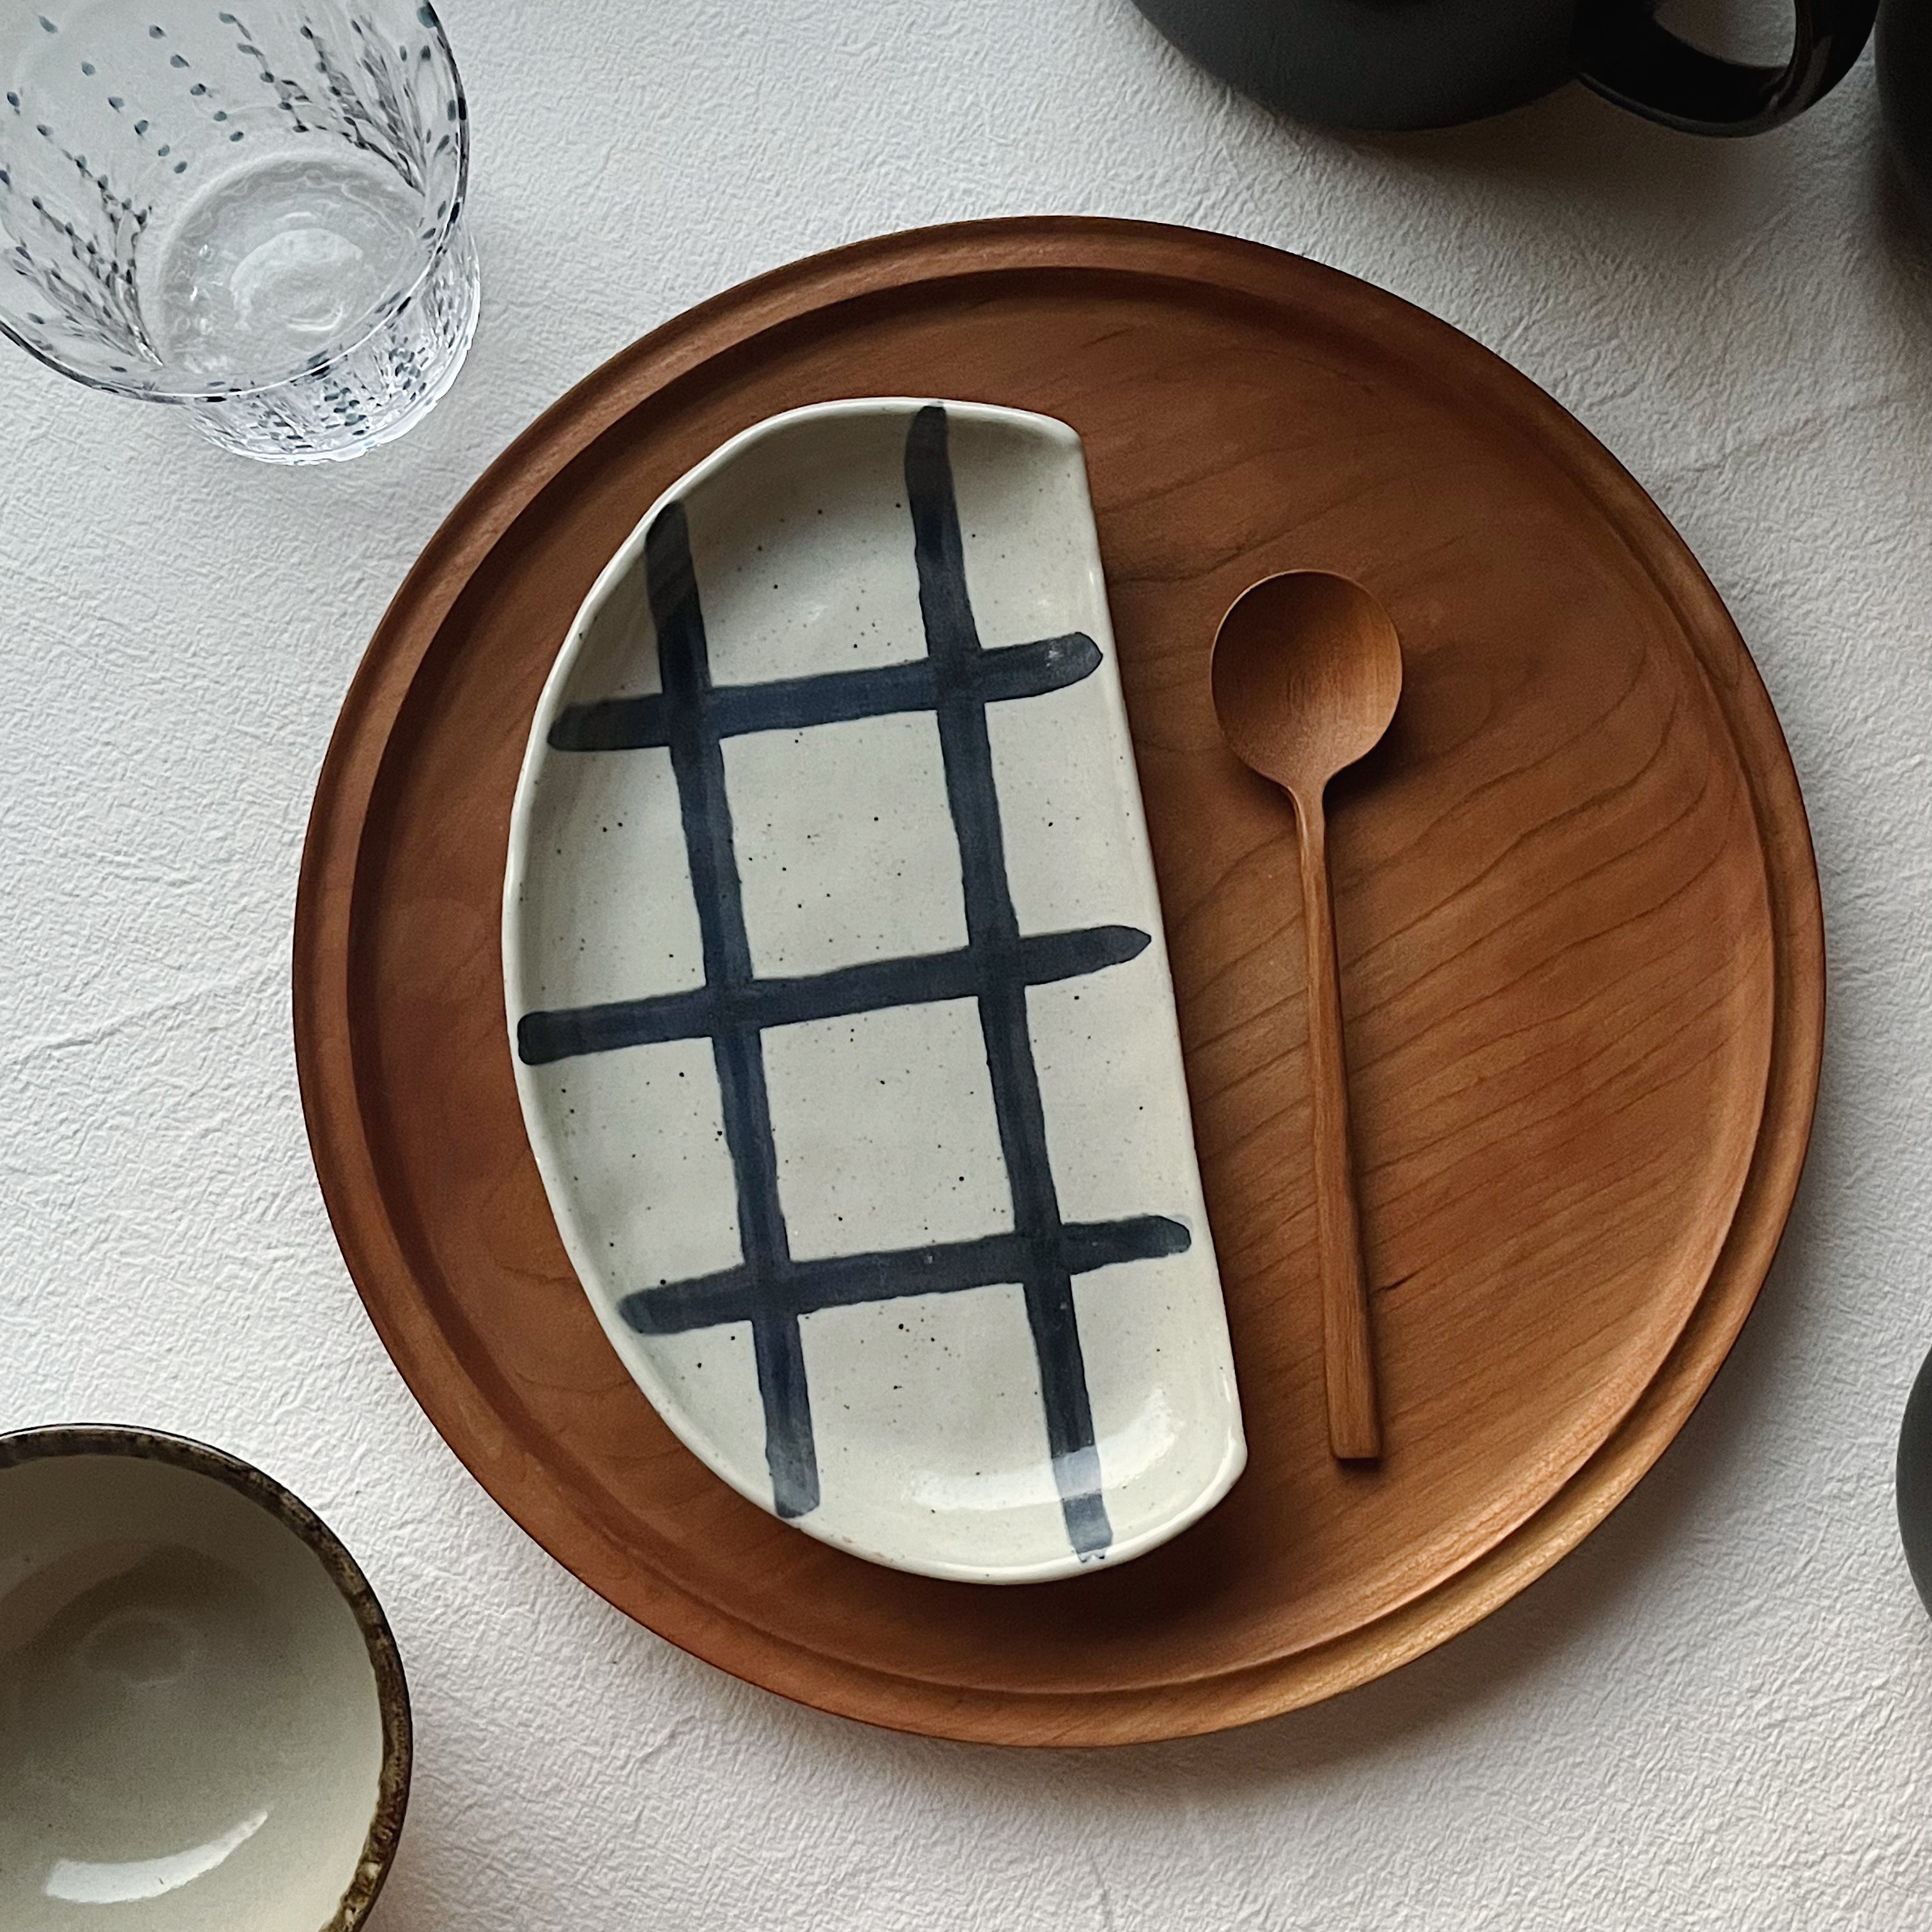 日式手繪藍格半月盤 陶瓷烤串燒鳥盤 煎餃刺身盤 (8.3折)